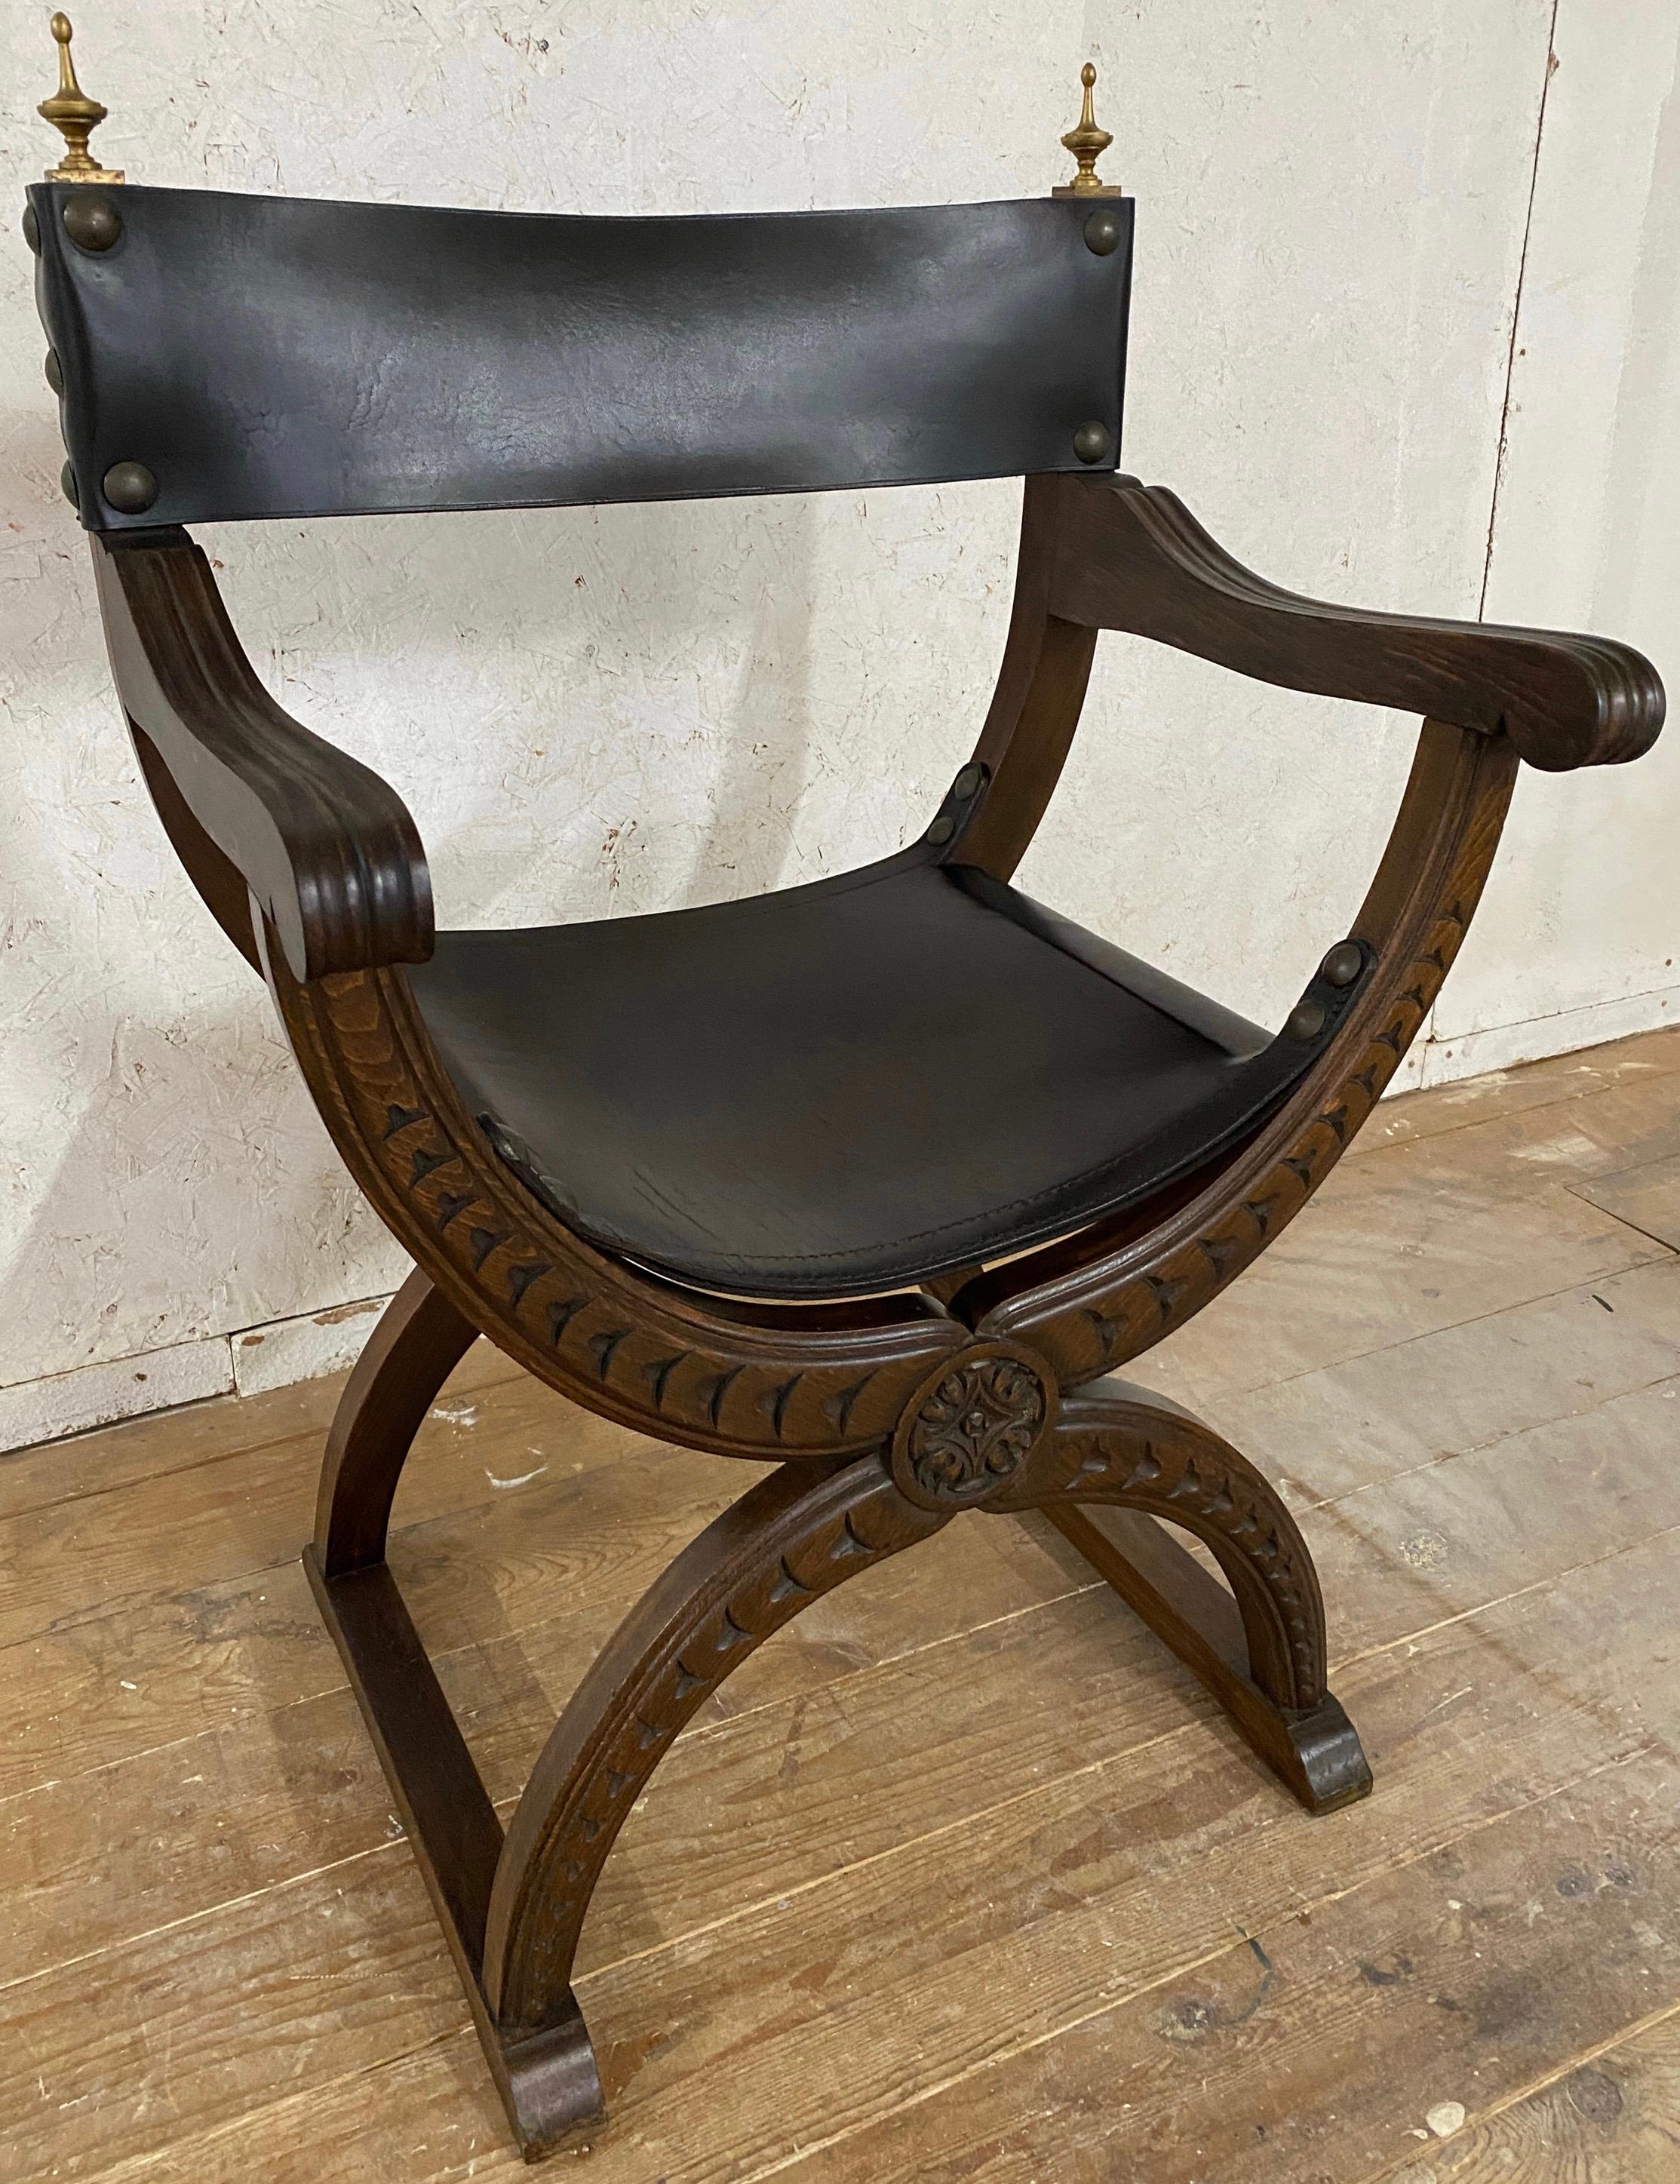 Très belle Curule Savonarola de style renaissance continentale du XIXe siècle.
fauteuil ou chaise trône. Cette chaise de style gothique magnifiquement sculptée est dotée d'une assise et d'un dossier en cuir noir, de grandes têtes de clous et d'épis